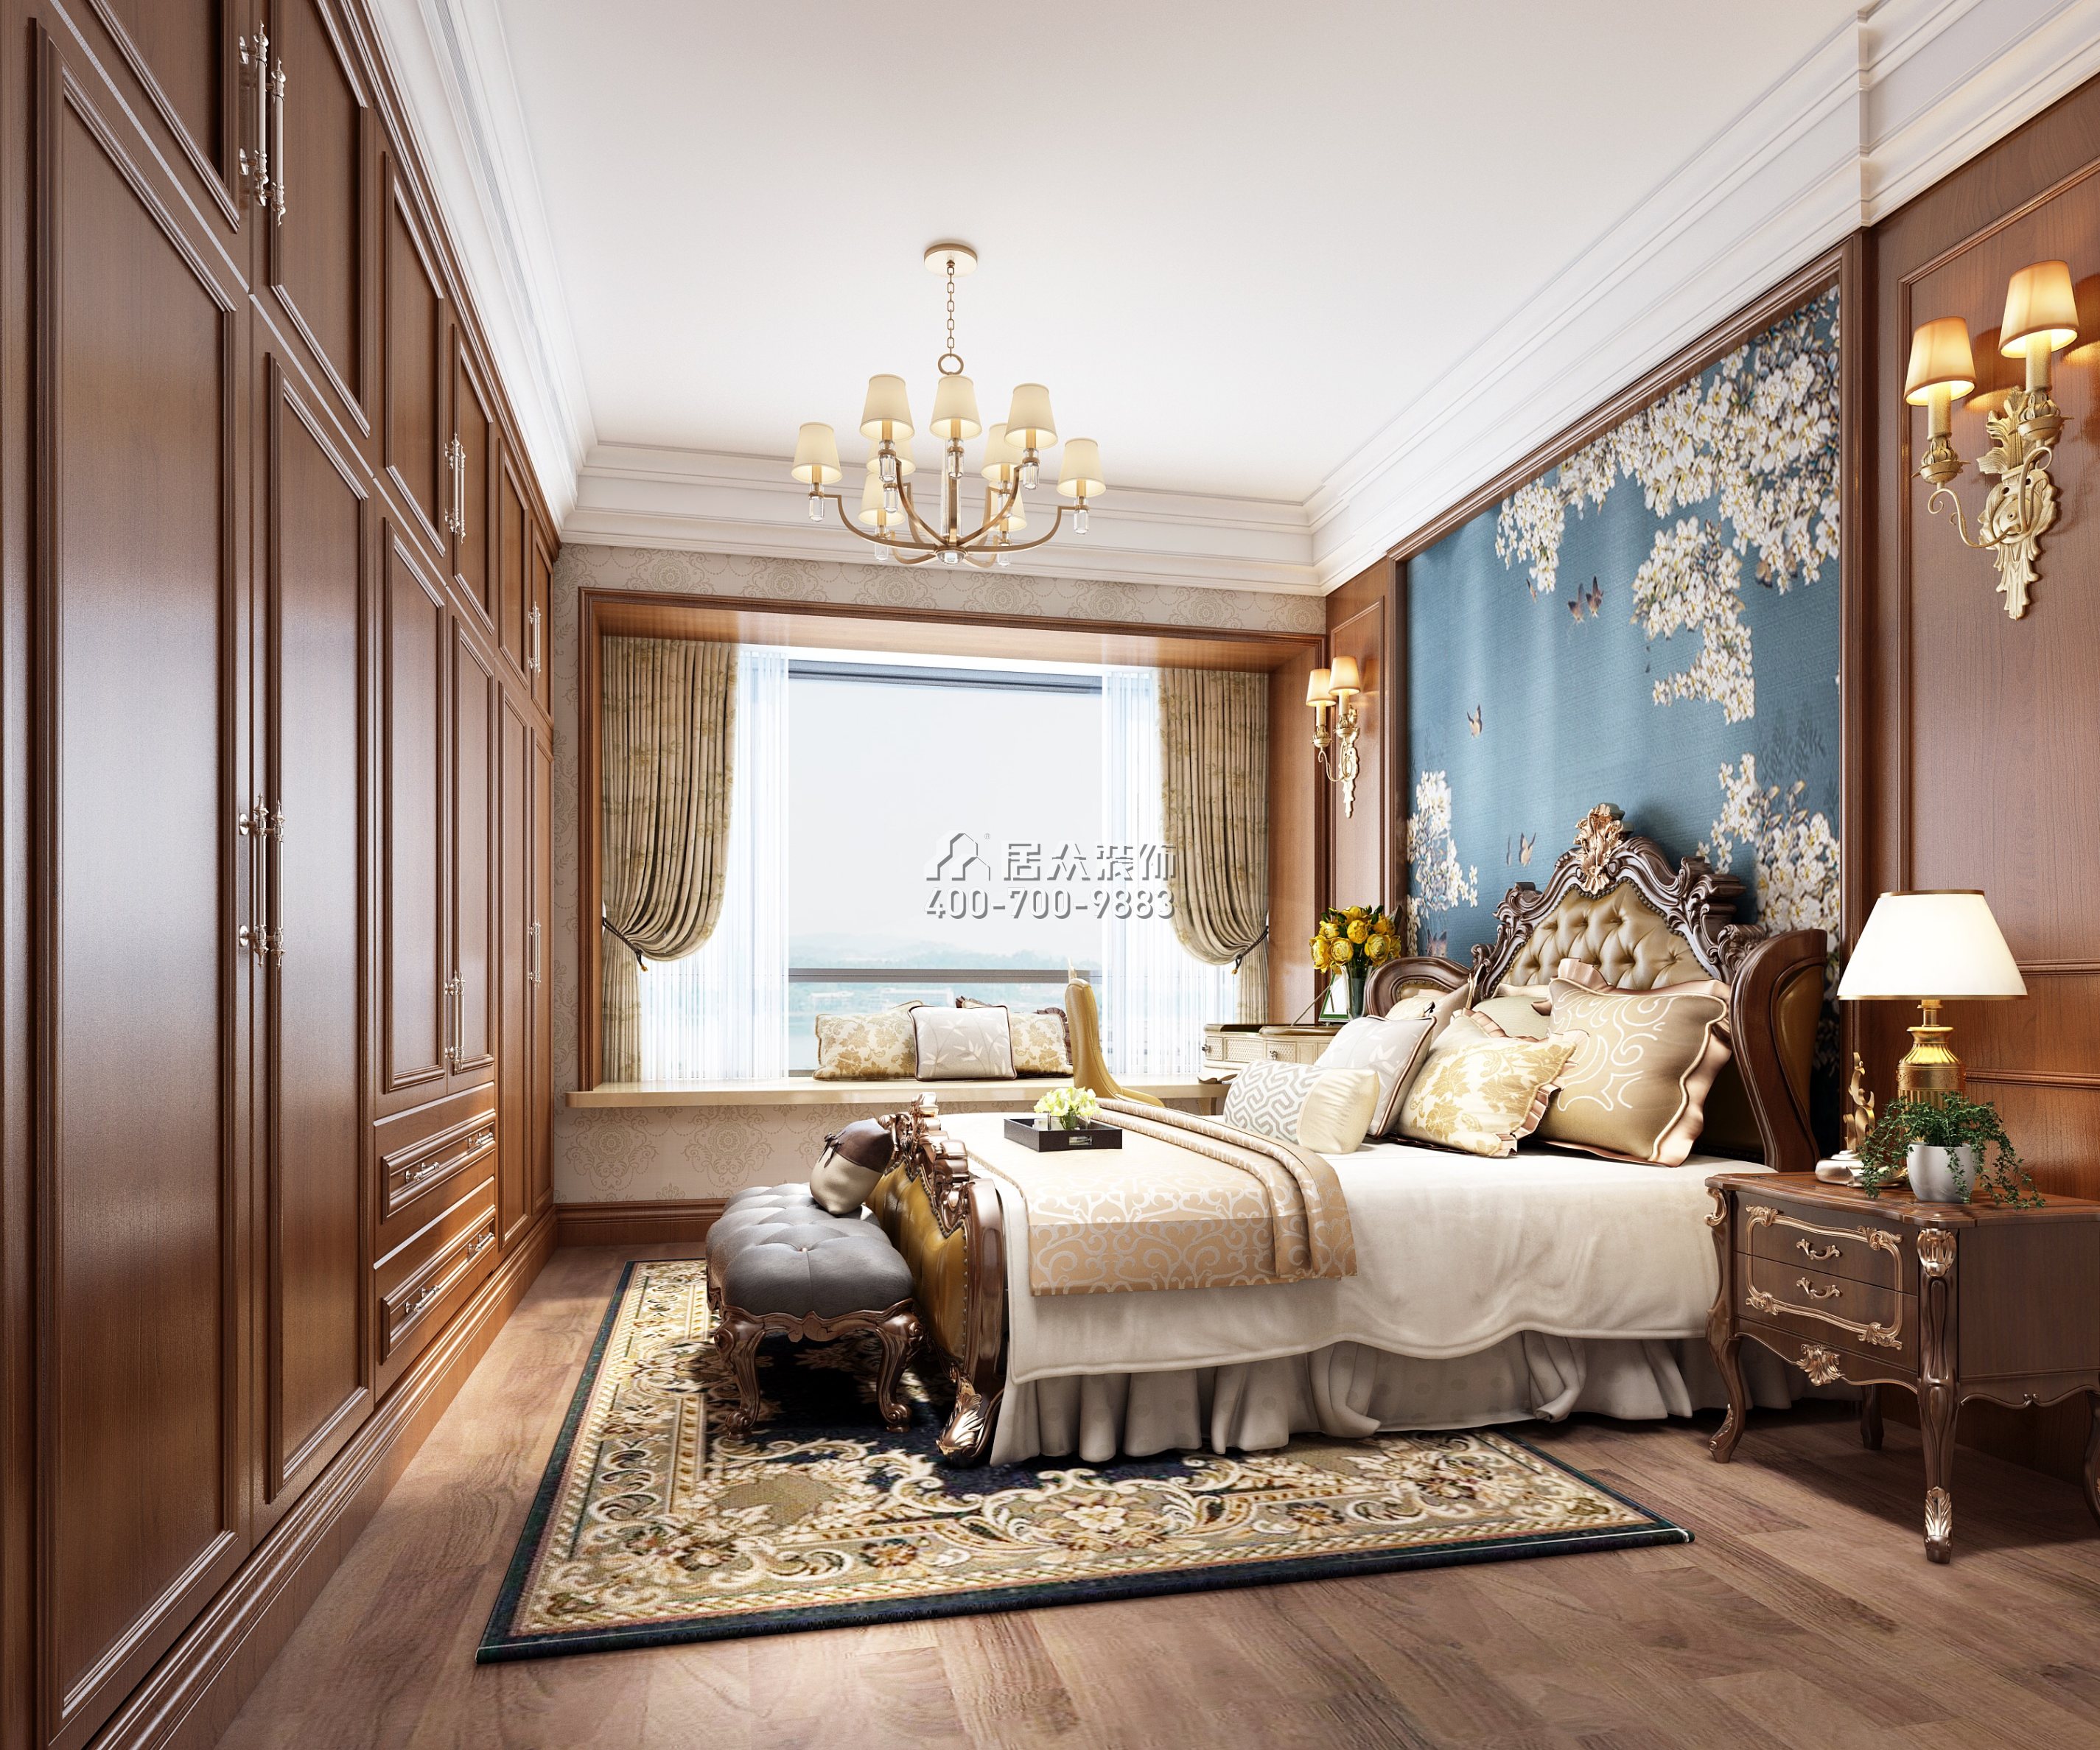 共和世家133平方米美式風格平層戶型臥室裝修效果圖